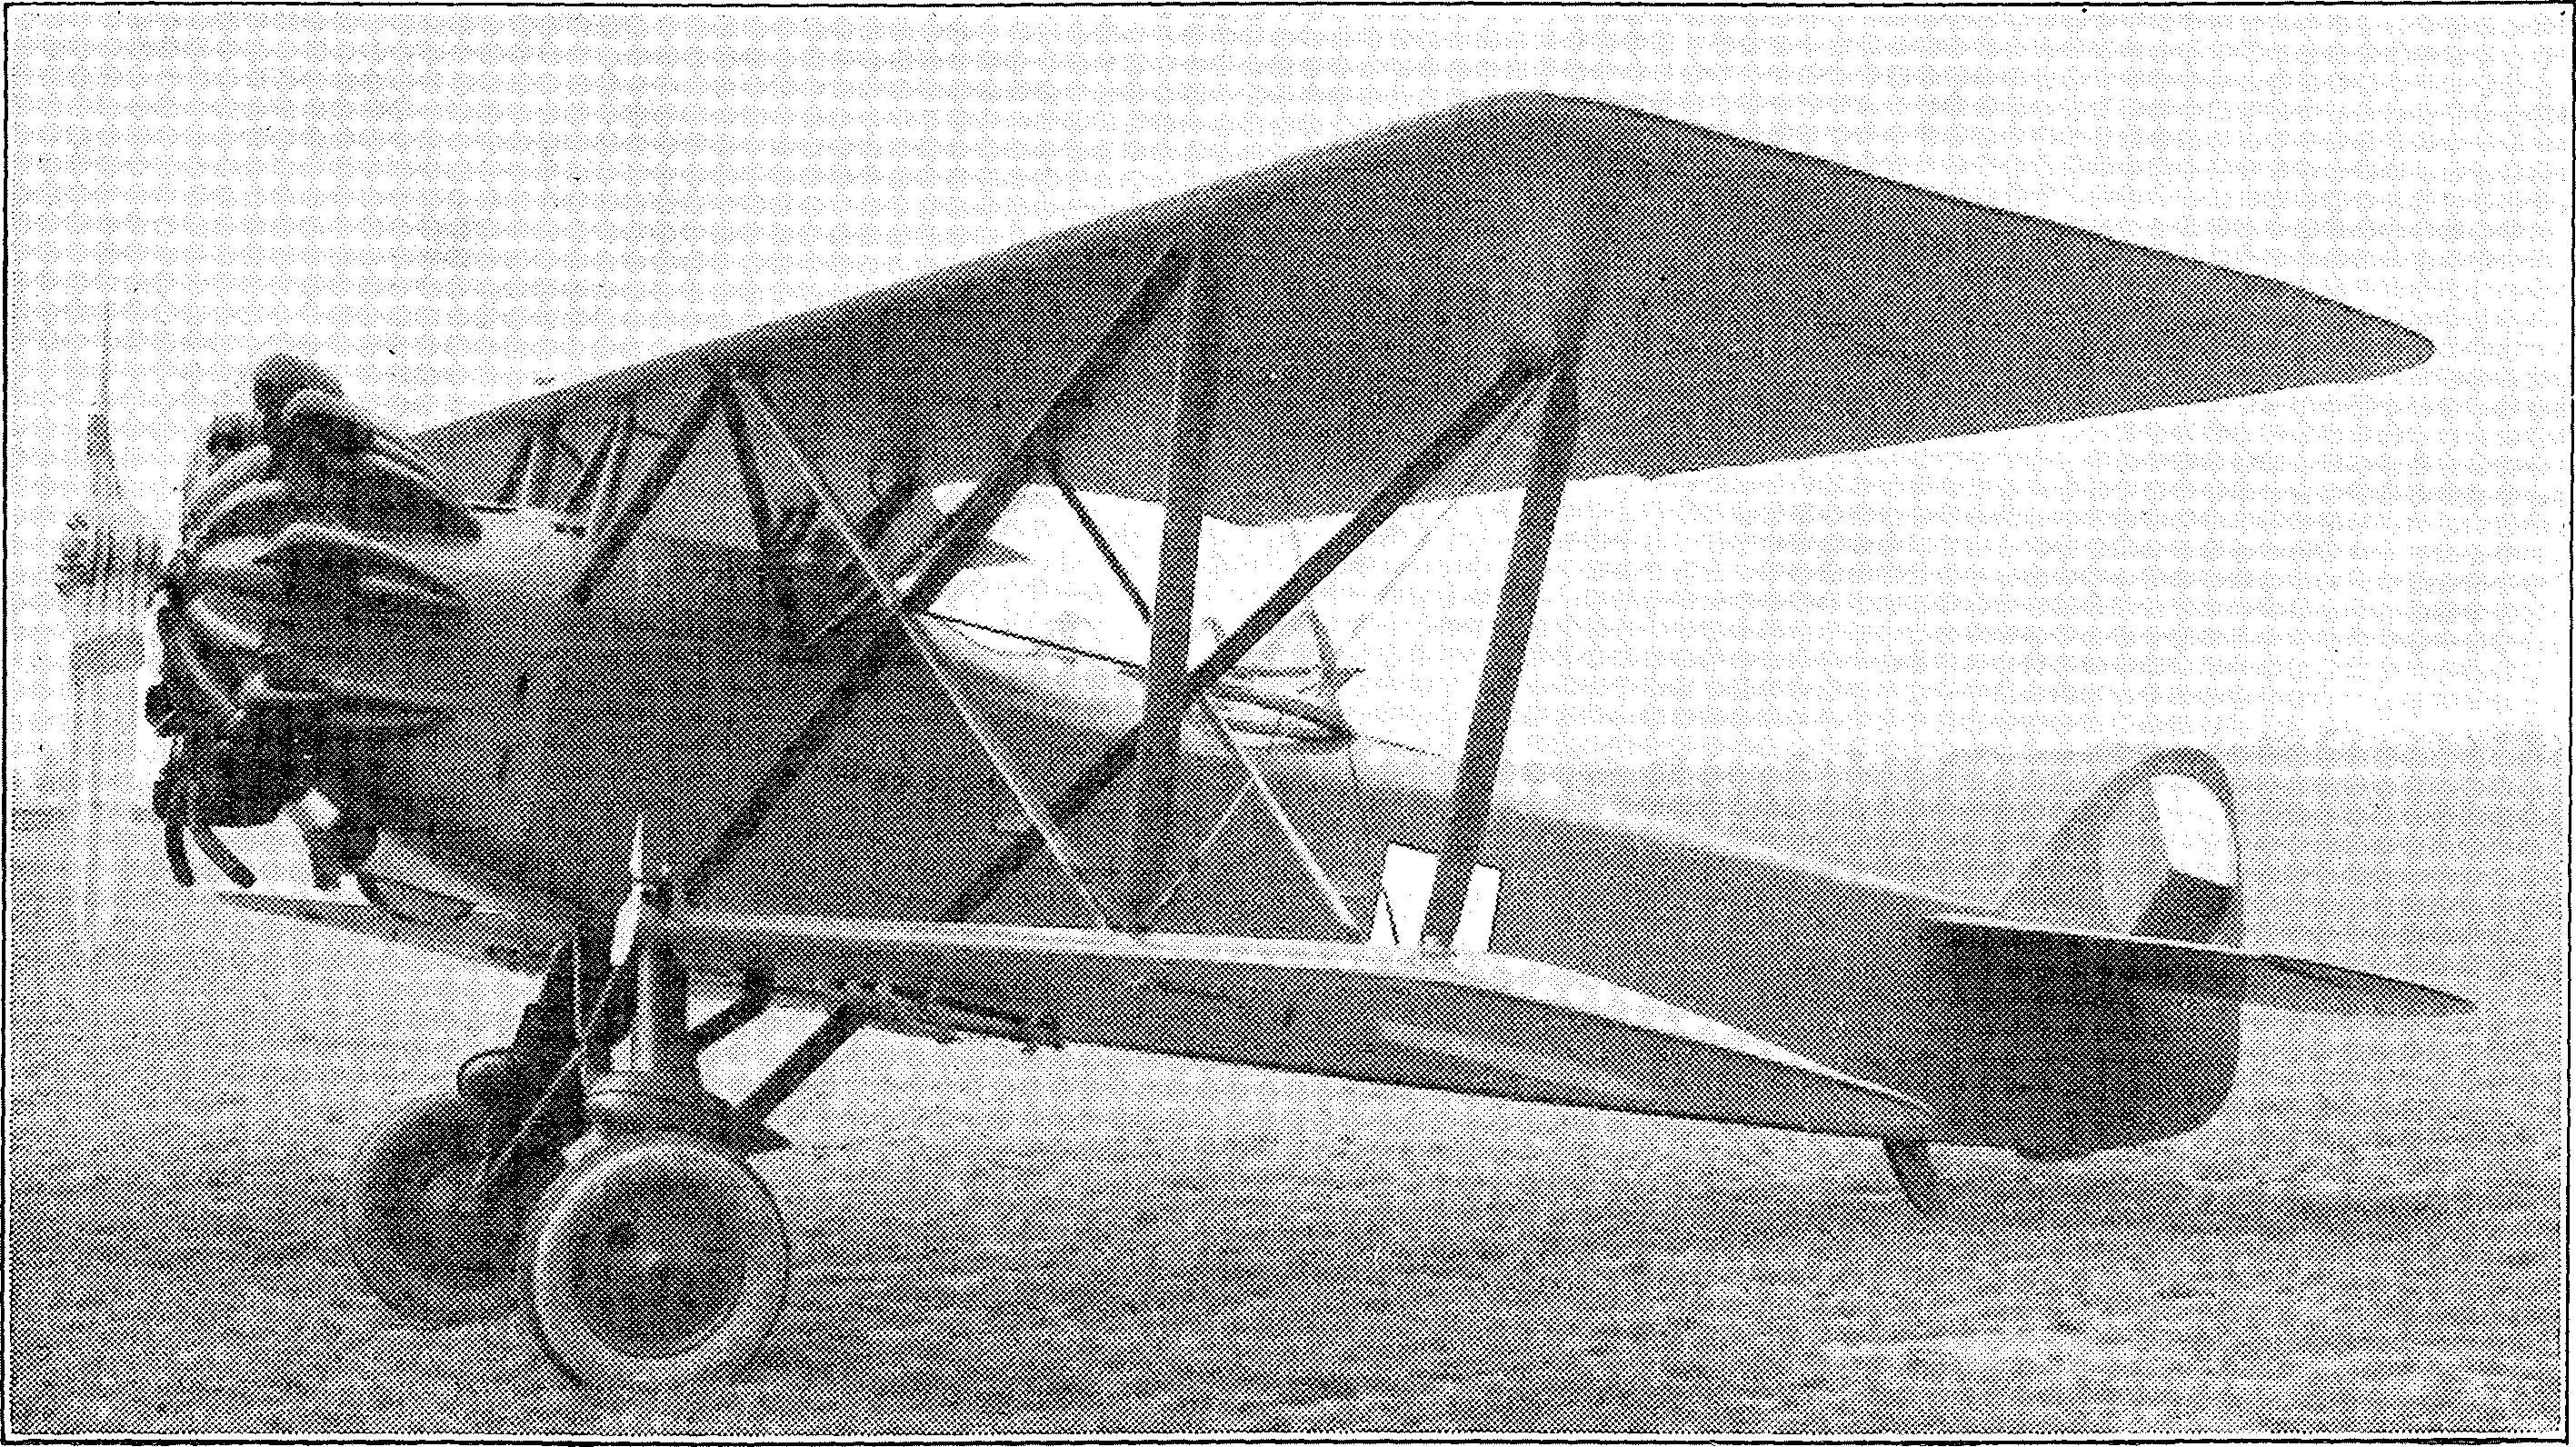 Segelflug, Motorflug und Modellflug sowie Luftfahrt und Luftverkehr im Deutschen Reich (Weimarer Republik) im Jahre 1931